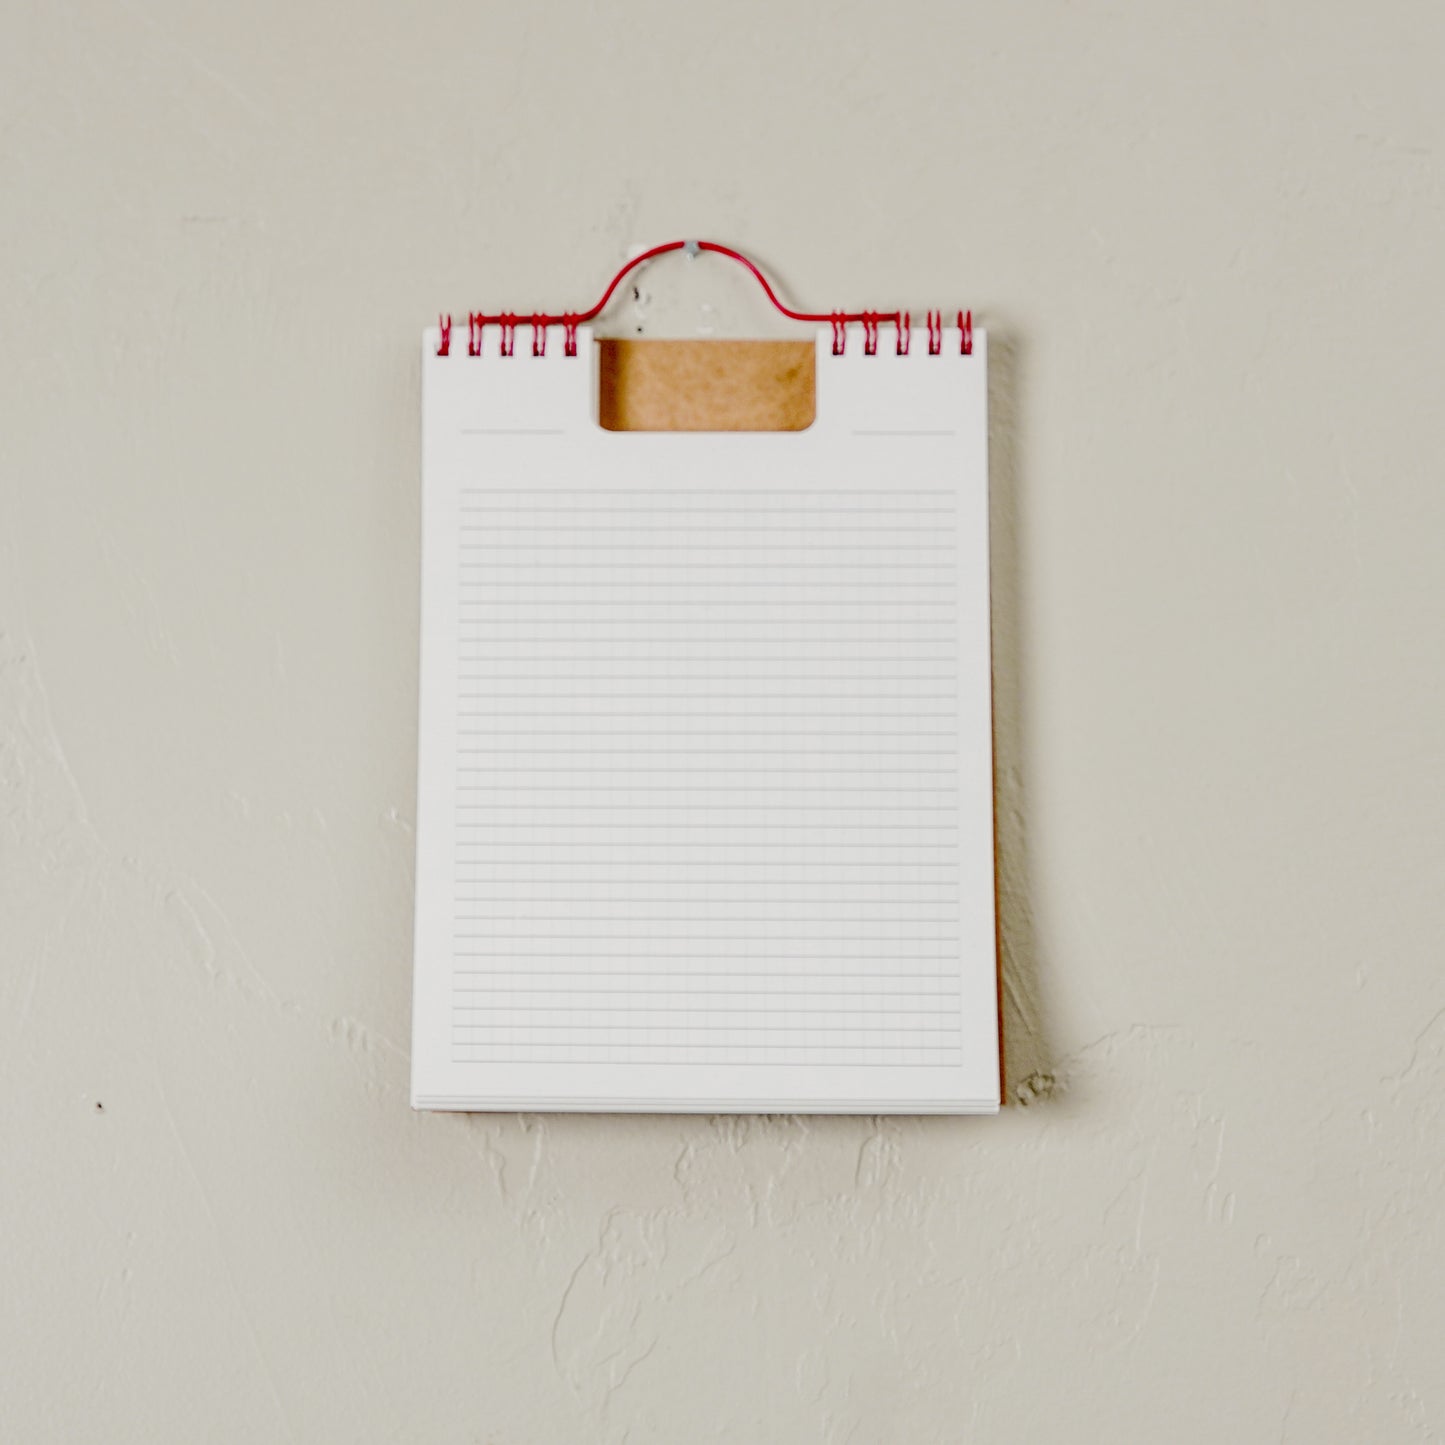 Hang-Up Kraft Notepad, 2 Styles